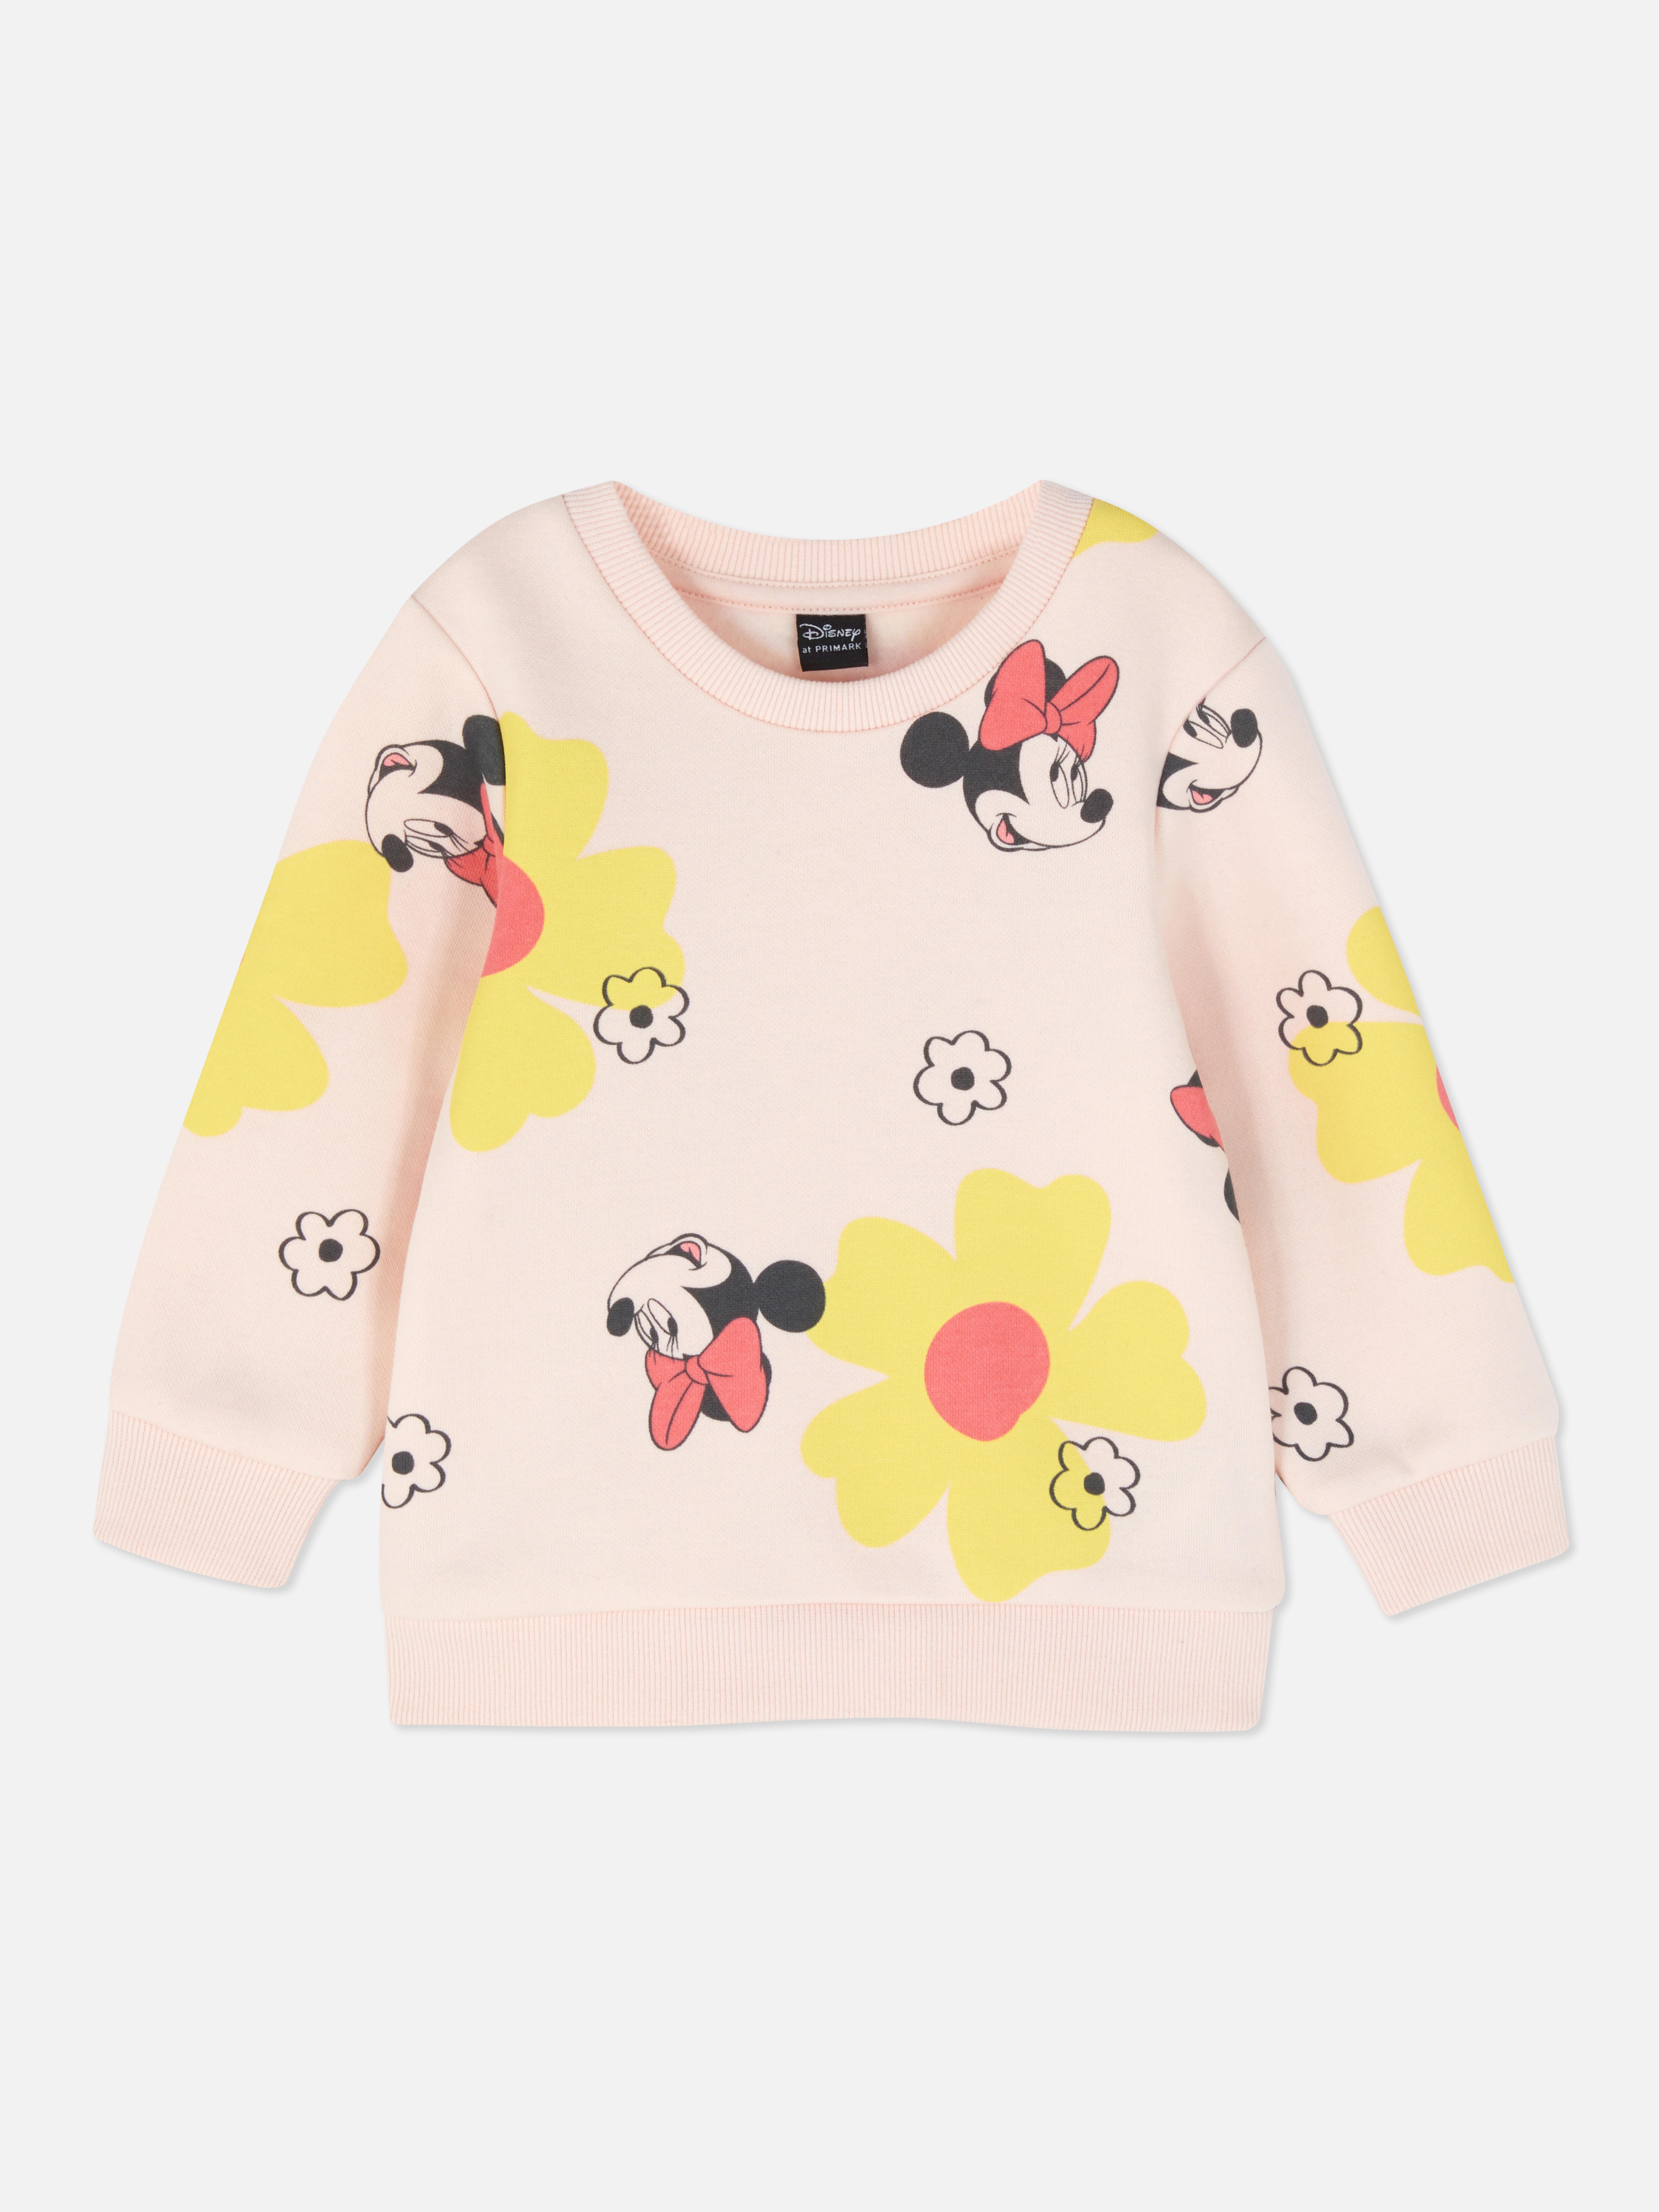 Disney’s Minnie Mouse Crew Neck Sweatshirt